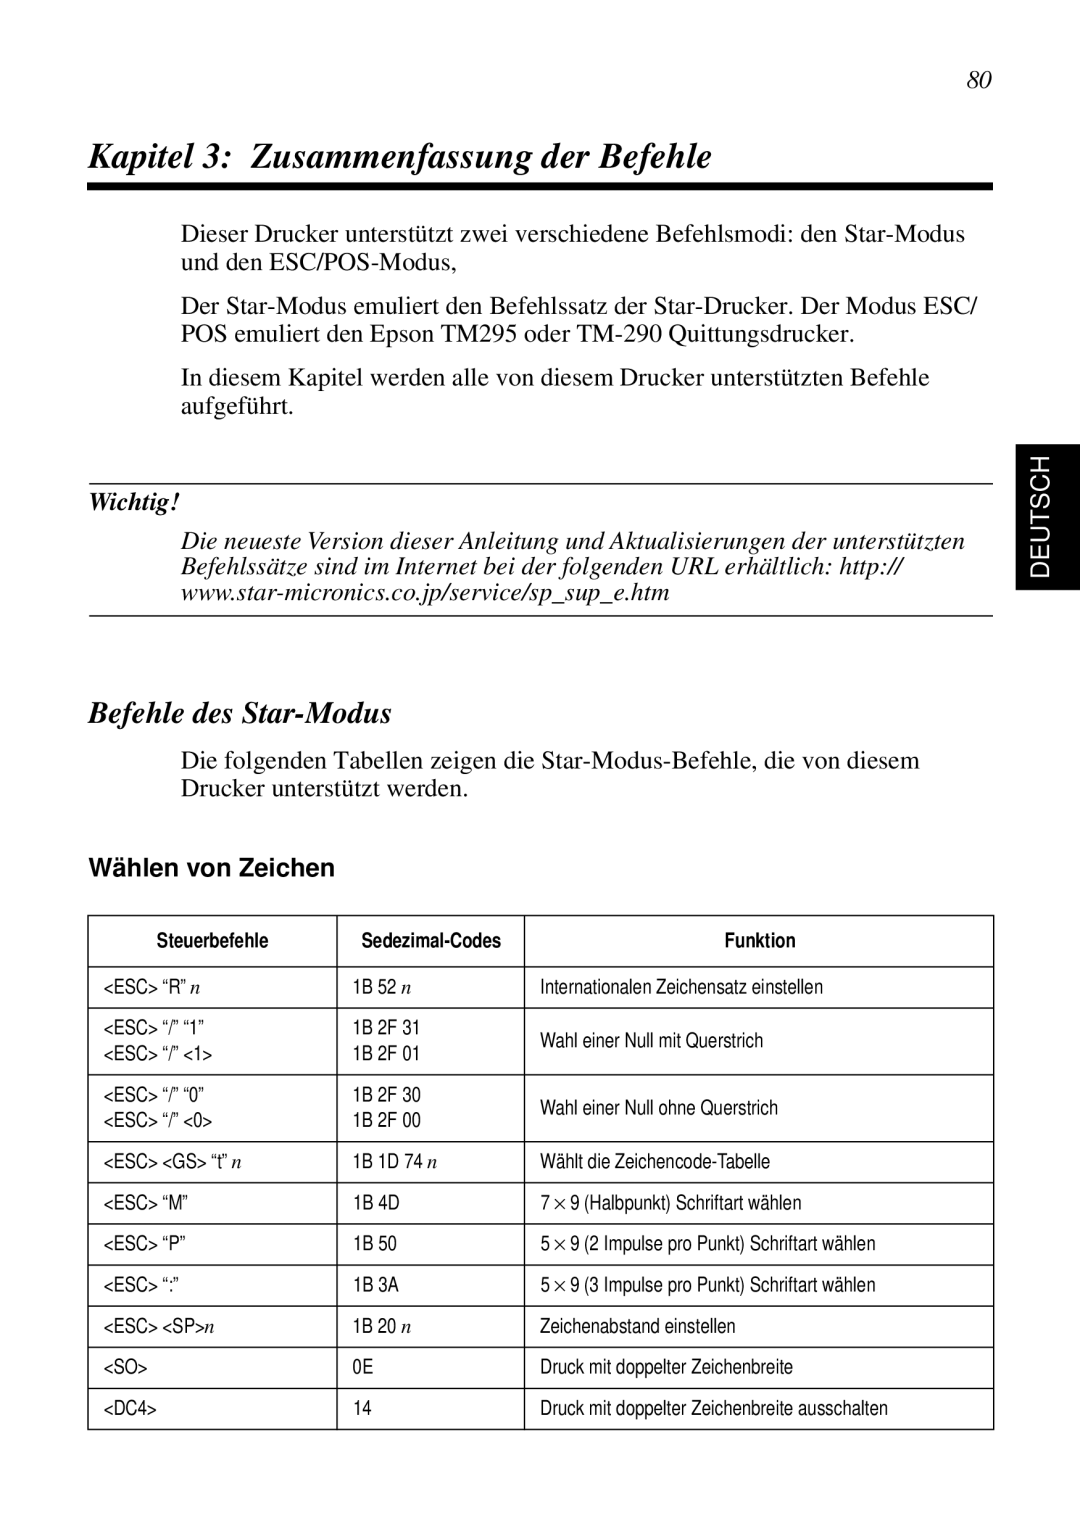 Star Micronics SP298 Kapitel 3 Zusammenfassung der Befehle, Befehle des Star-Modus, Wichtig, Deutsch, Wählen von Zeichen 